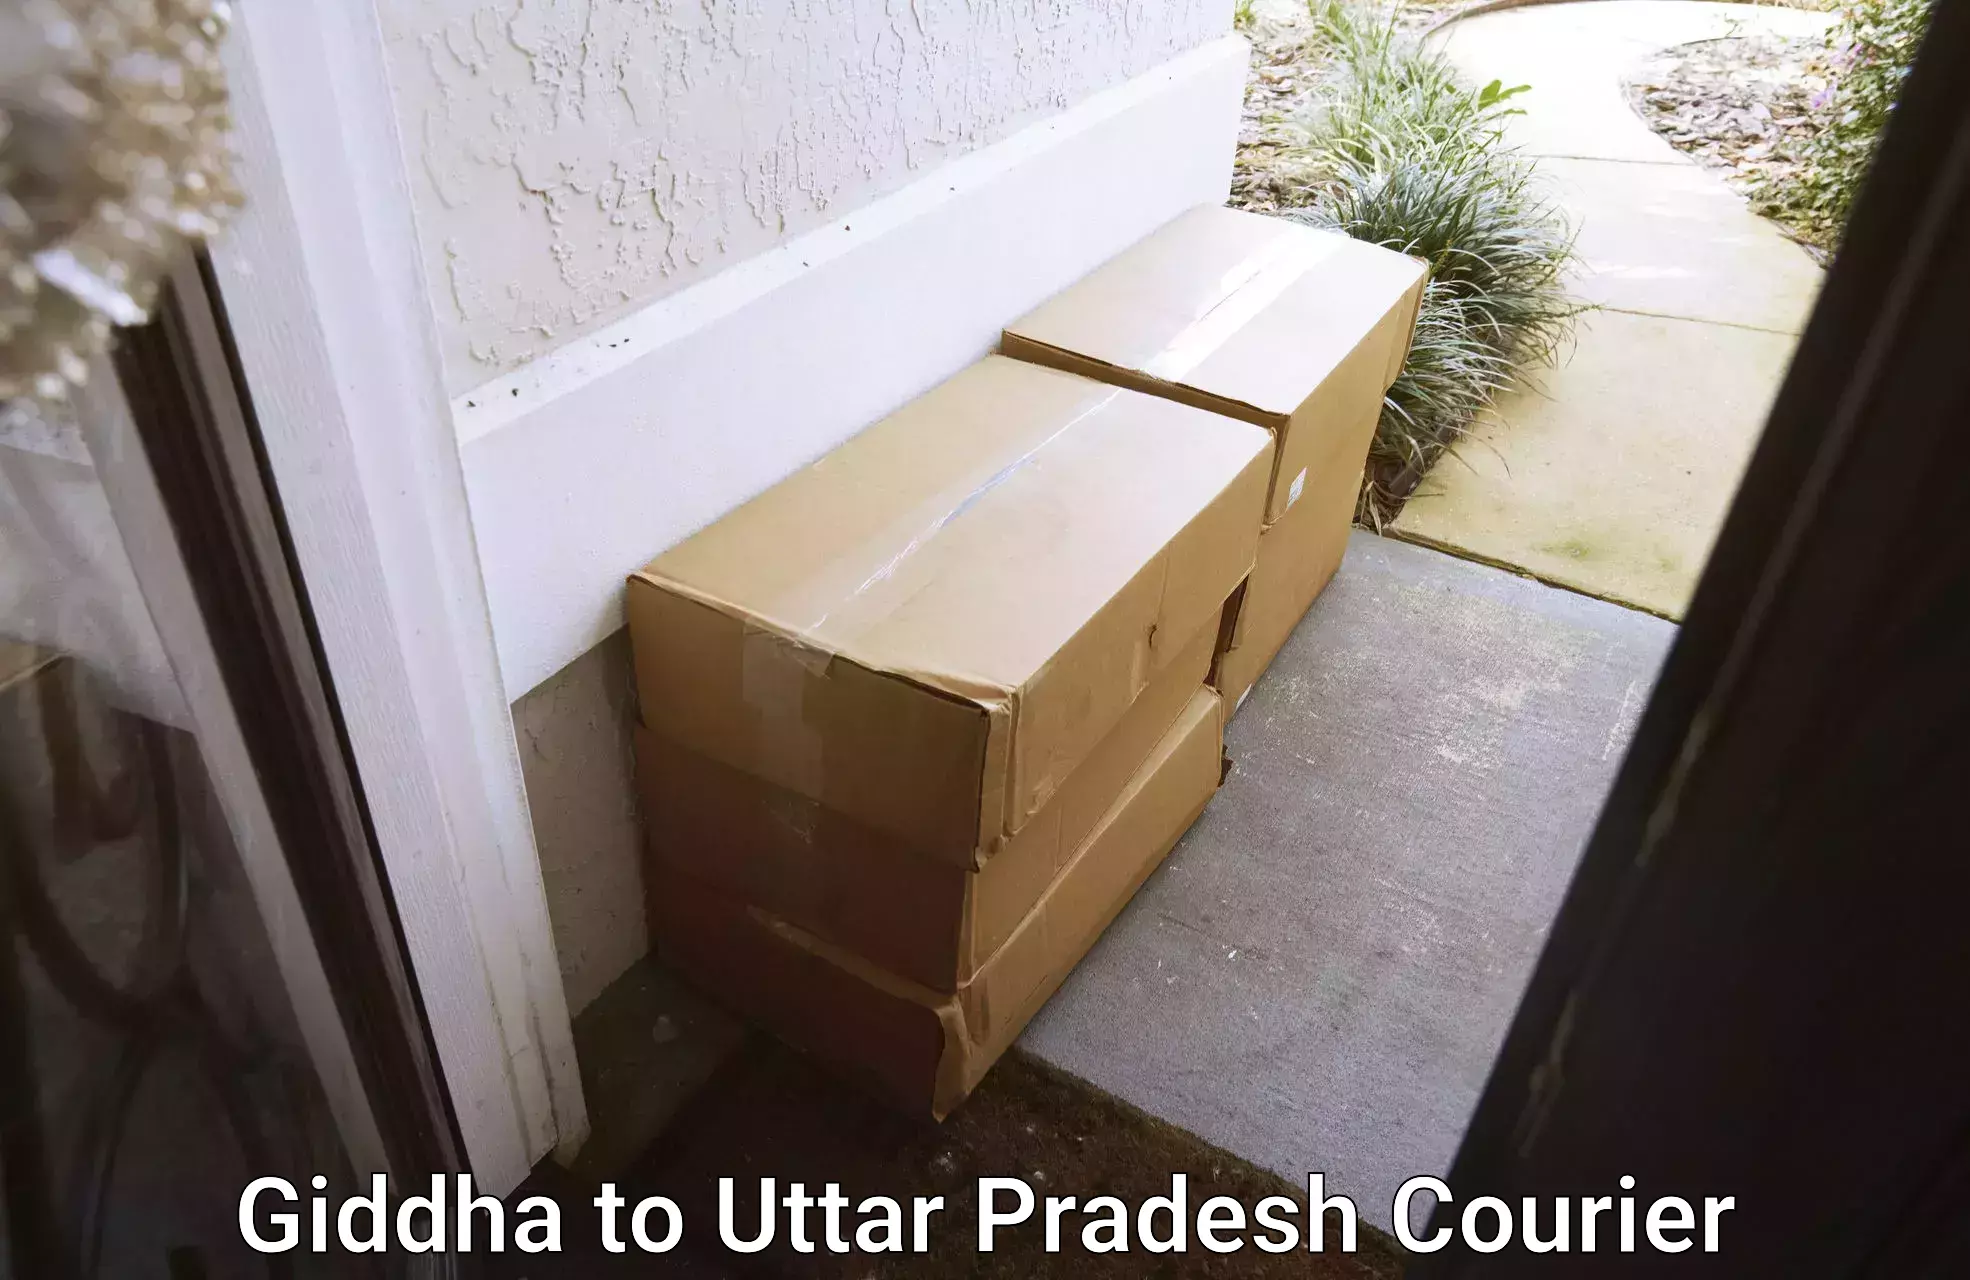 Safe household movers Giddha to Kauriram